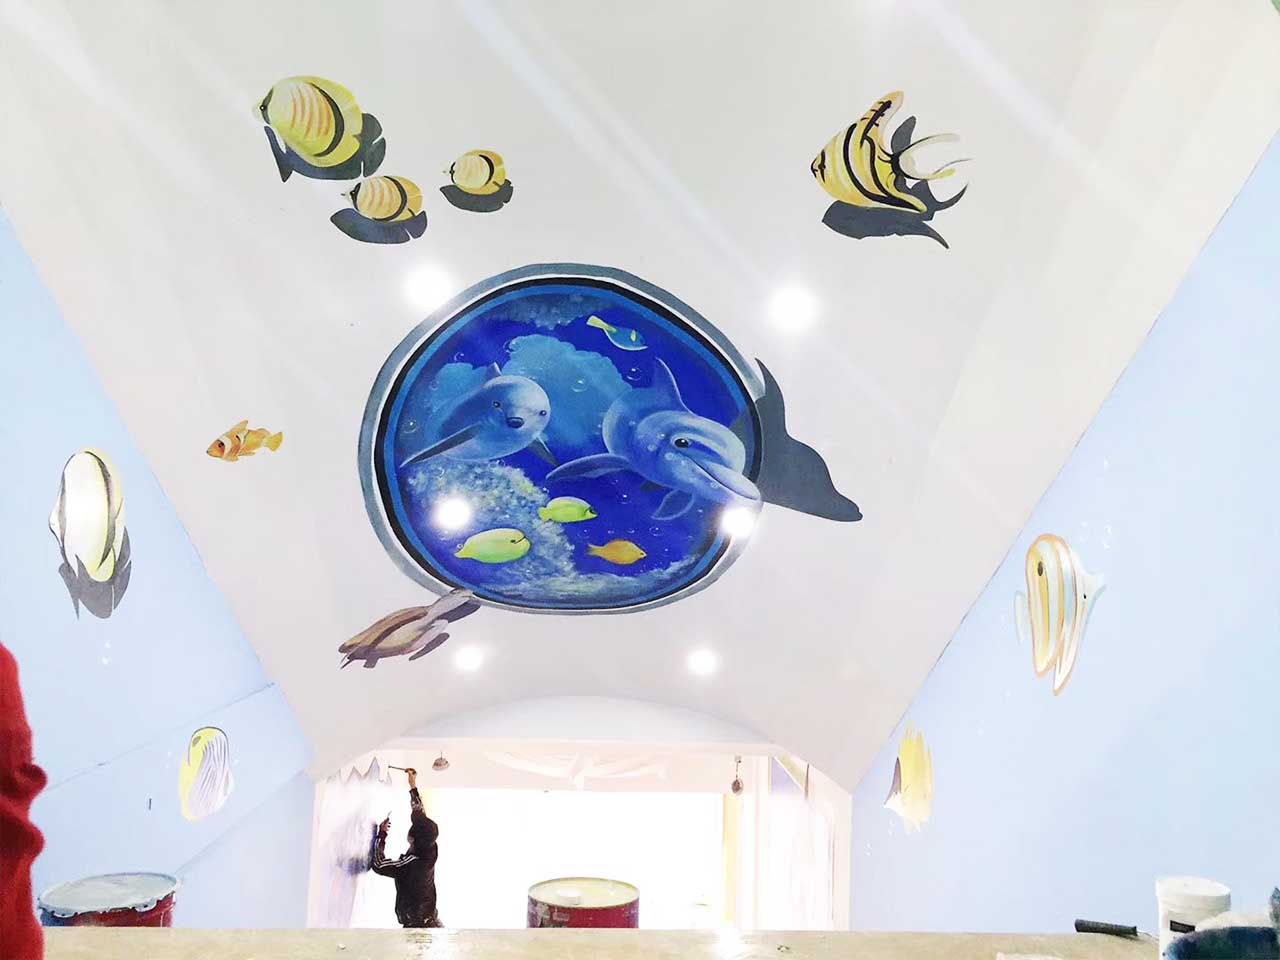 幼儿校园动物园游乐场卡通穹顶3D墙绘壁画彩绘涂鸦手绘示意图